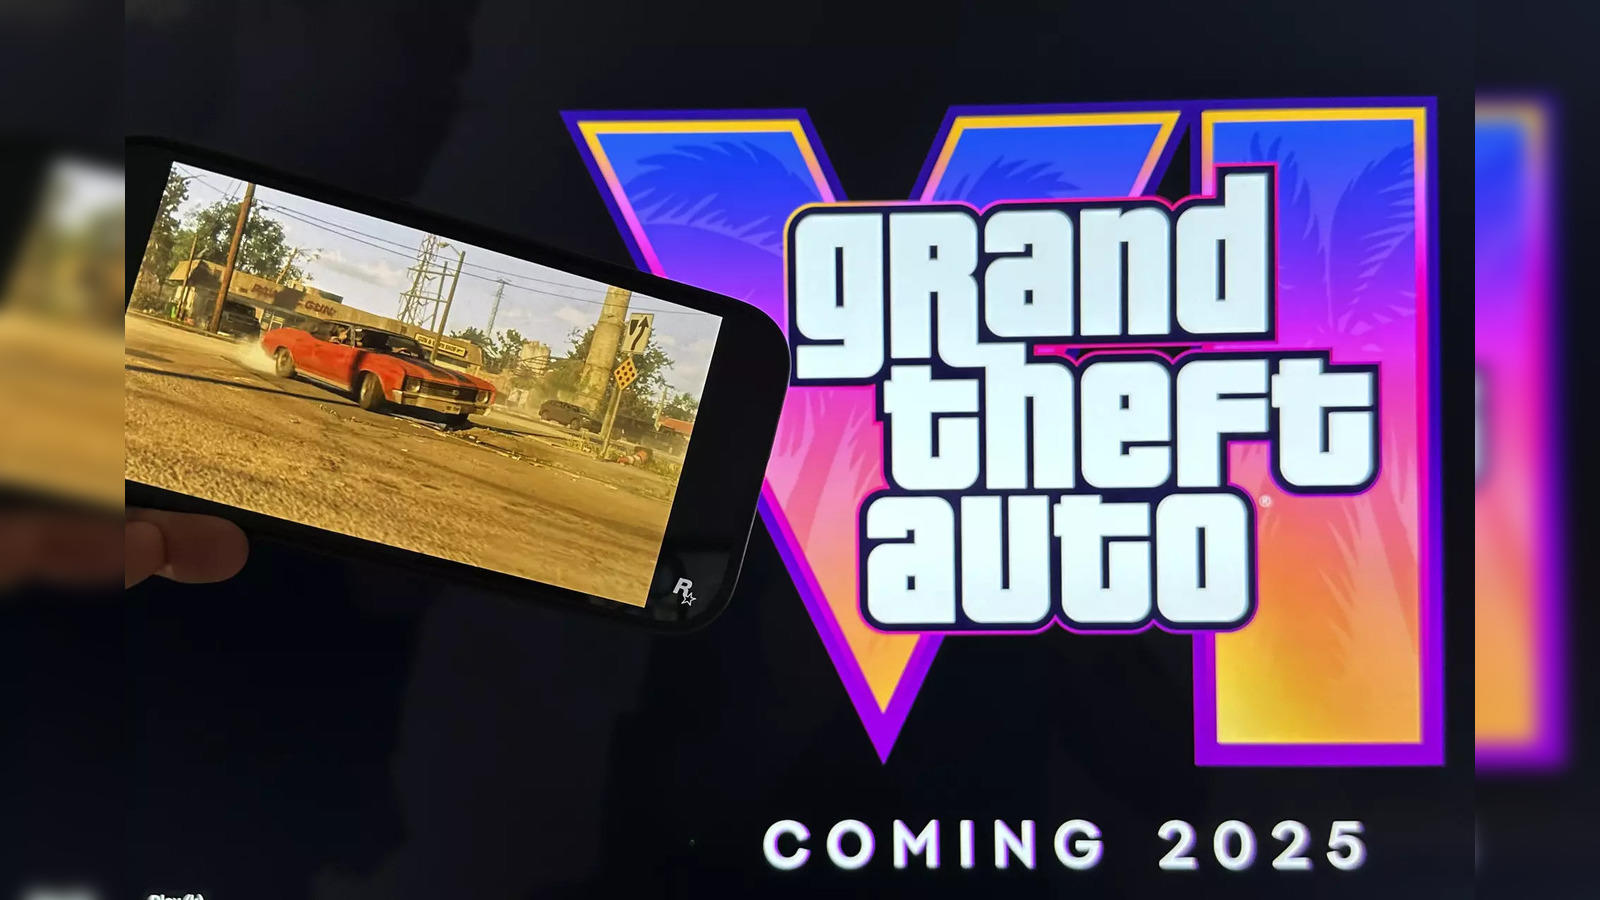 Grand Theft Auto VI - Logo design concept (OC) : r/GTA6